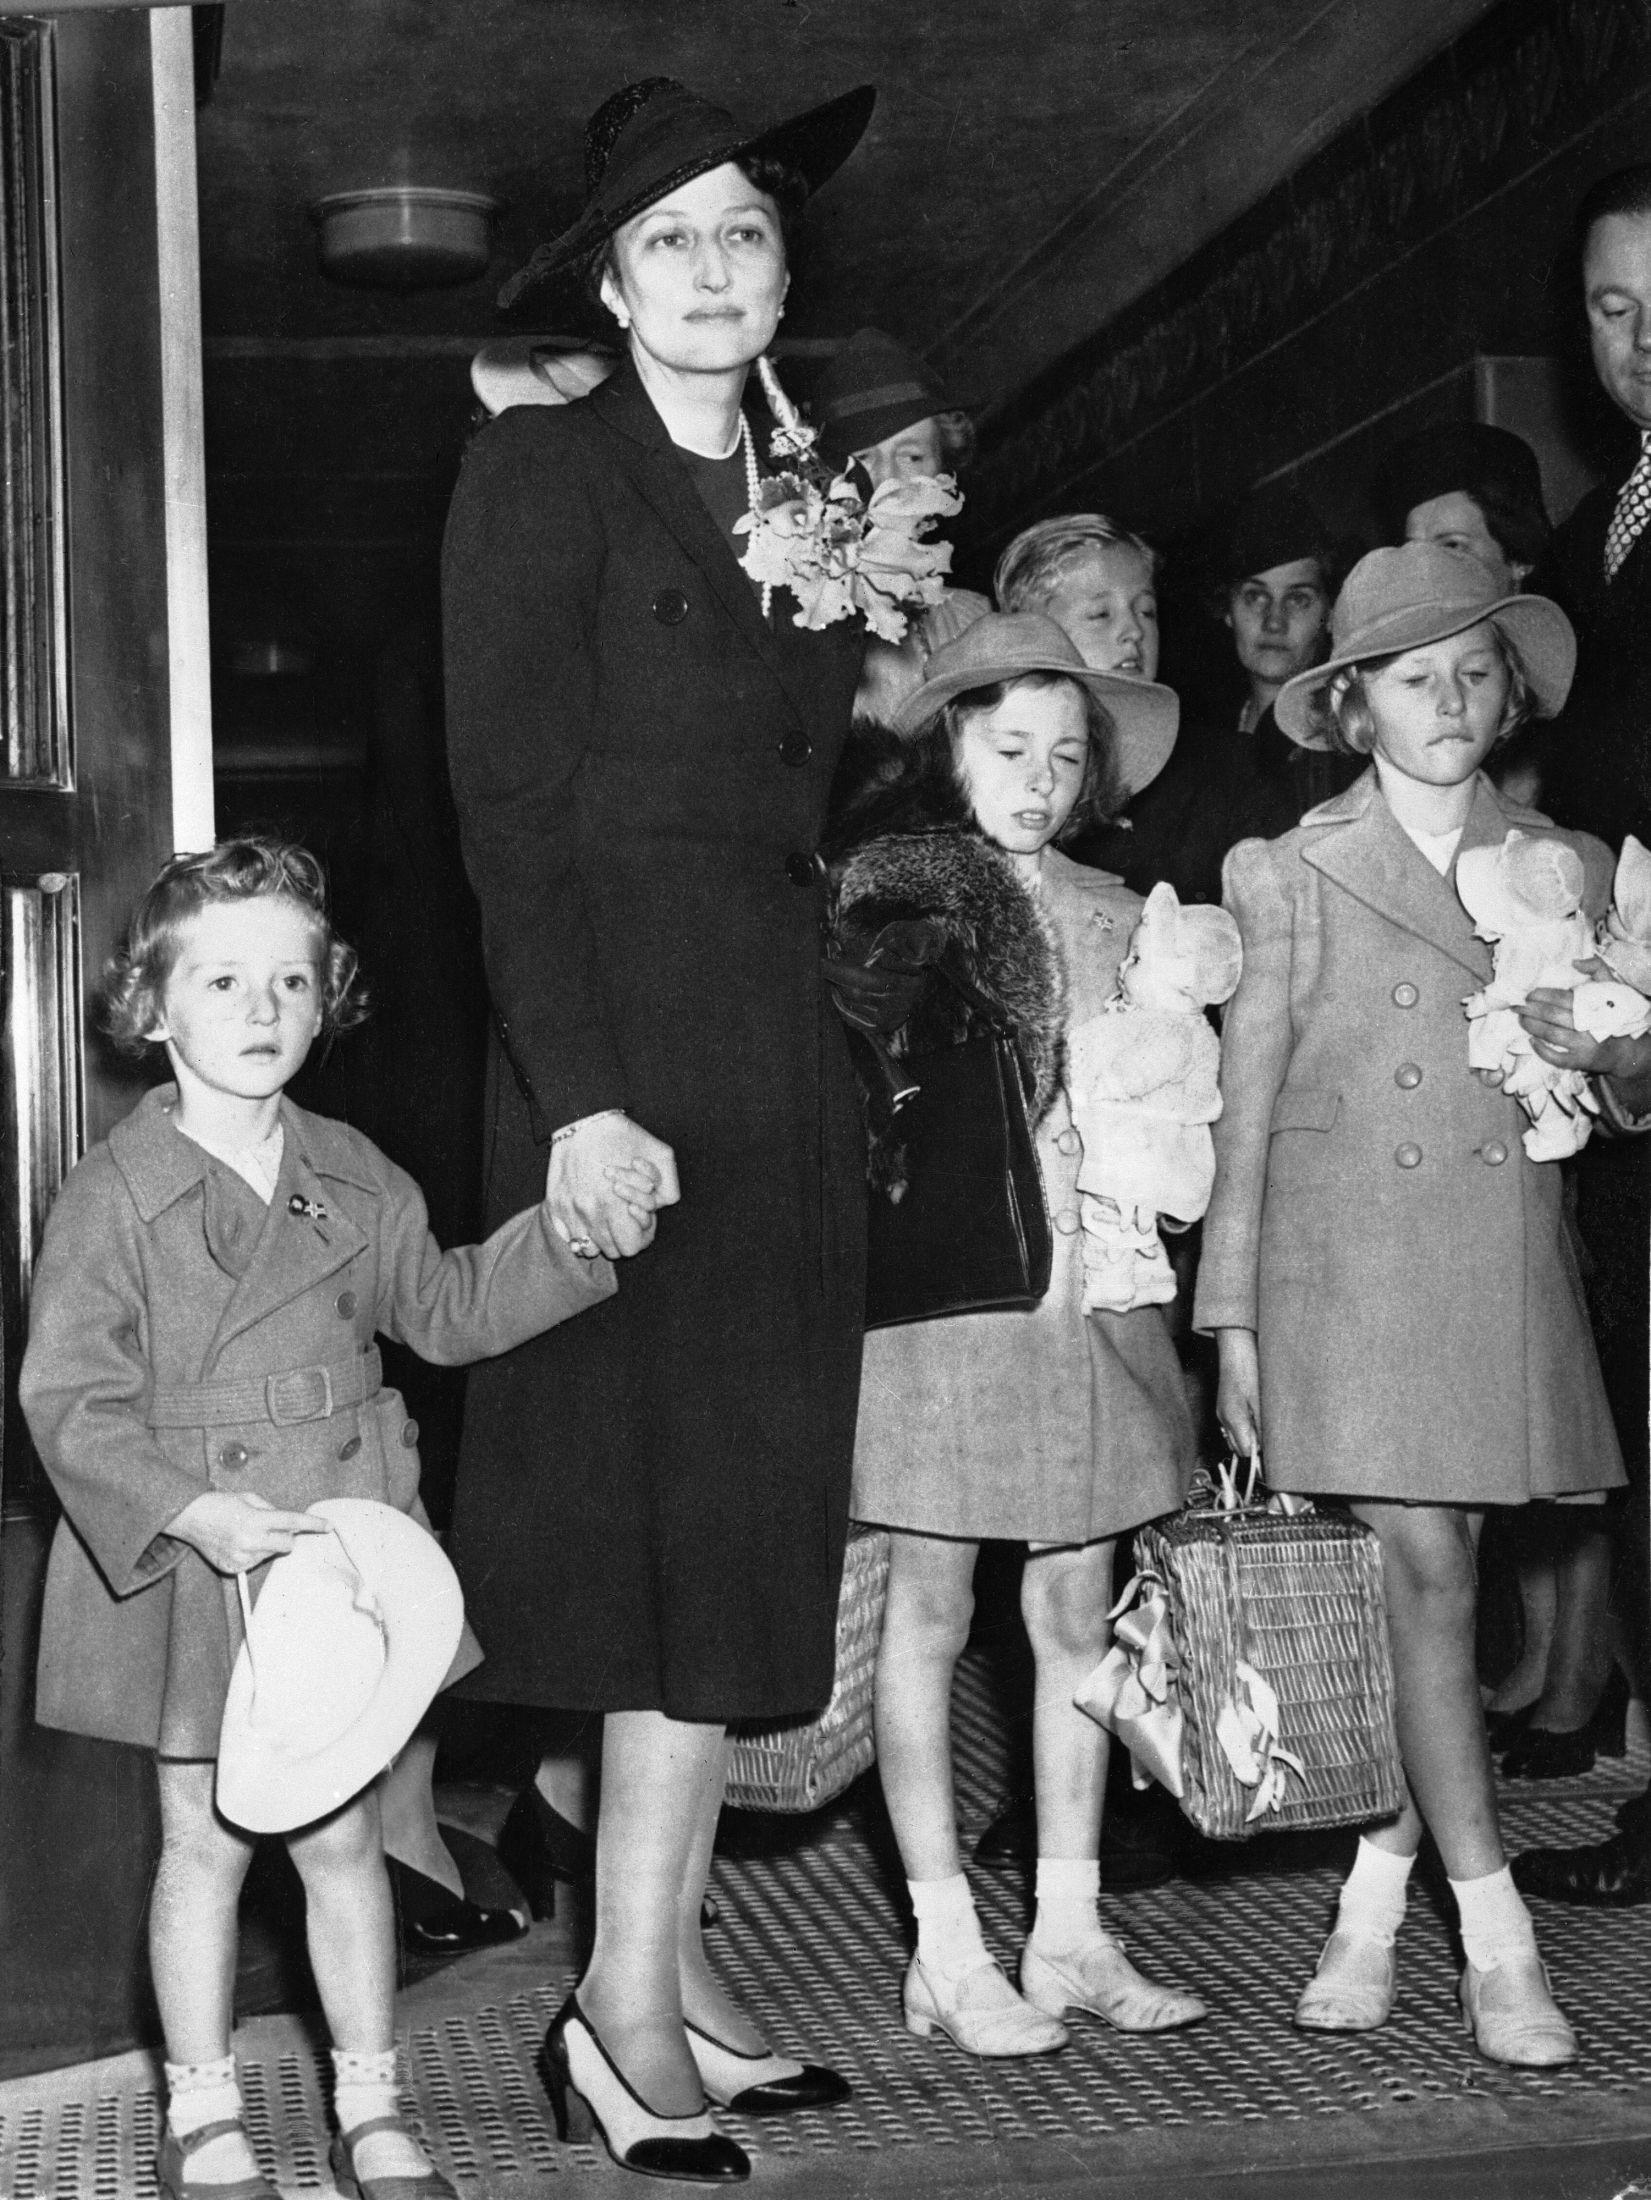 Kronprinsesse Märtha og barna flyktet til USA under andre verdenskrig. Her ankommer de USA etter flukten fra Norge via Finland i august 1940. Fine reiseantrekk, eller hva? Foto: NTB Arkiv